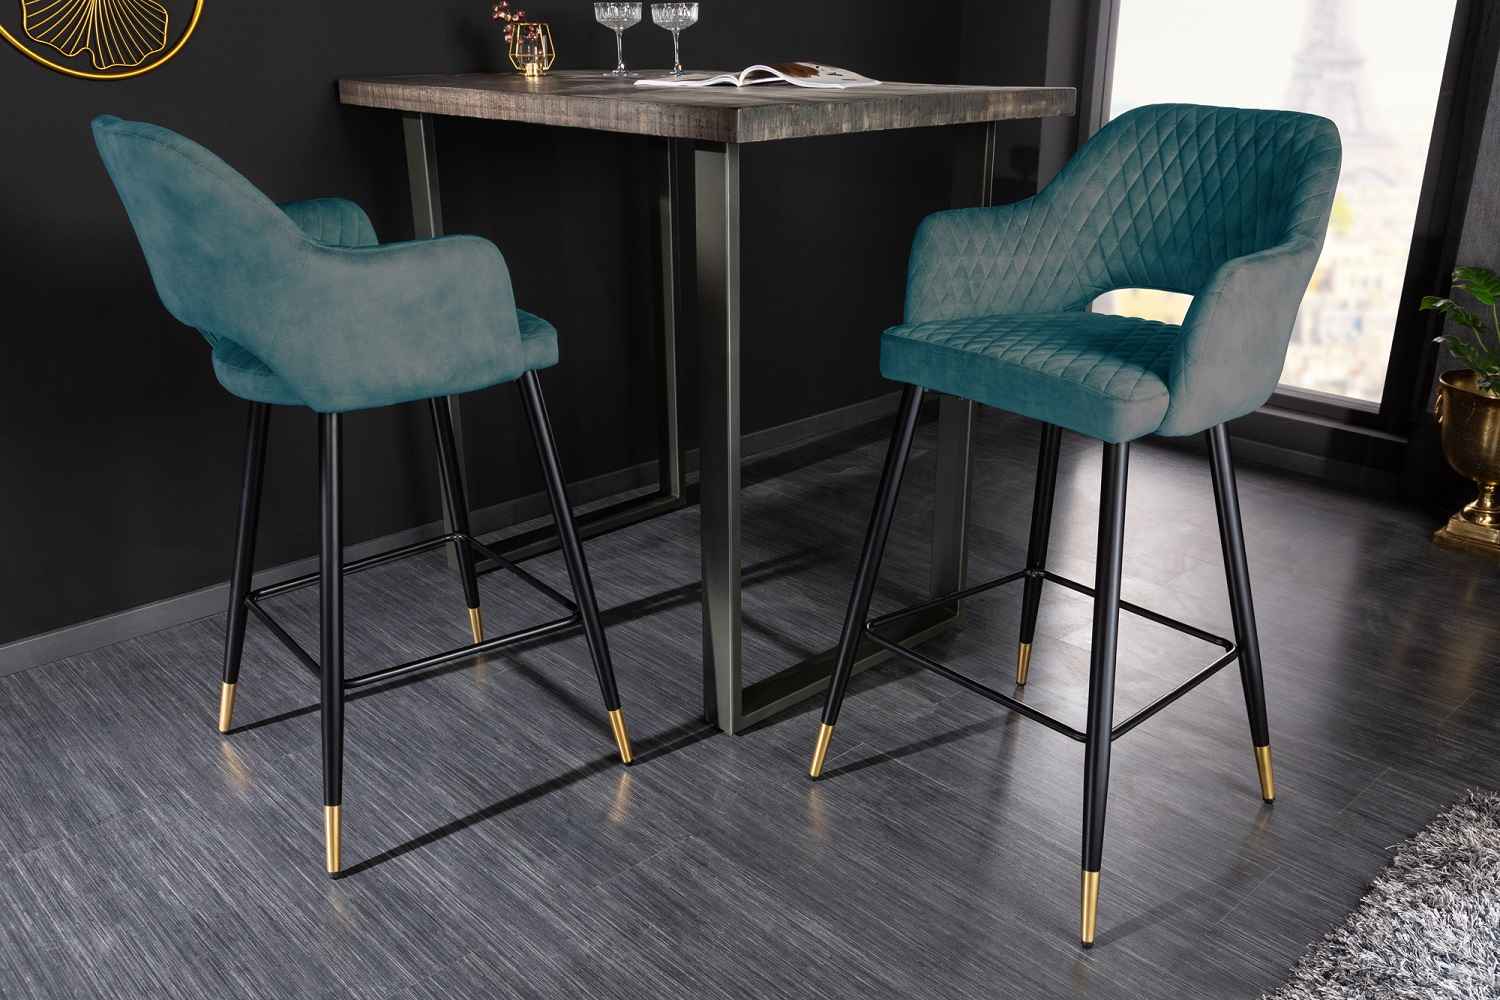 LuxD Designová barová židle Laney petrolejový samet